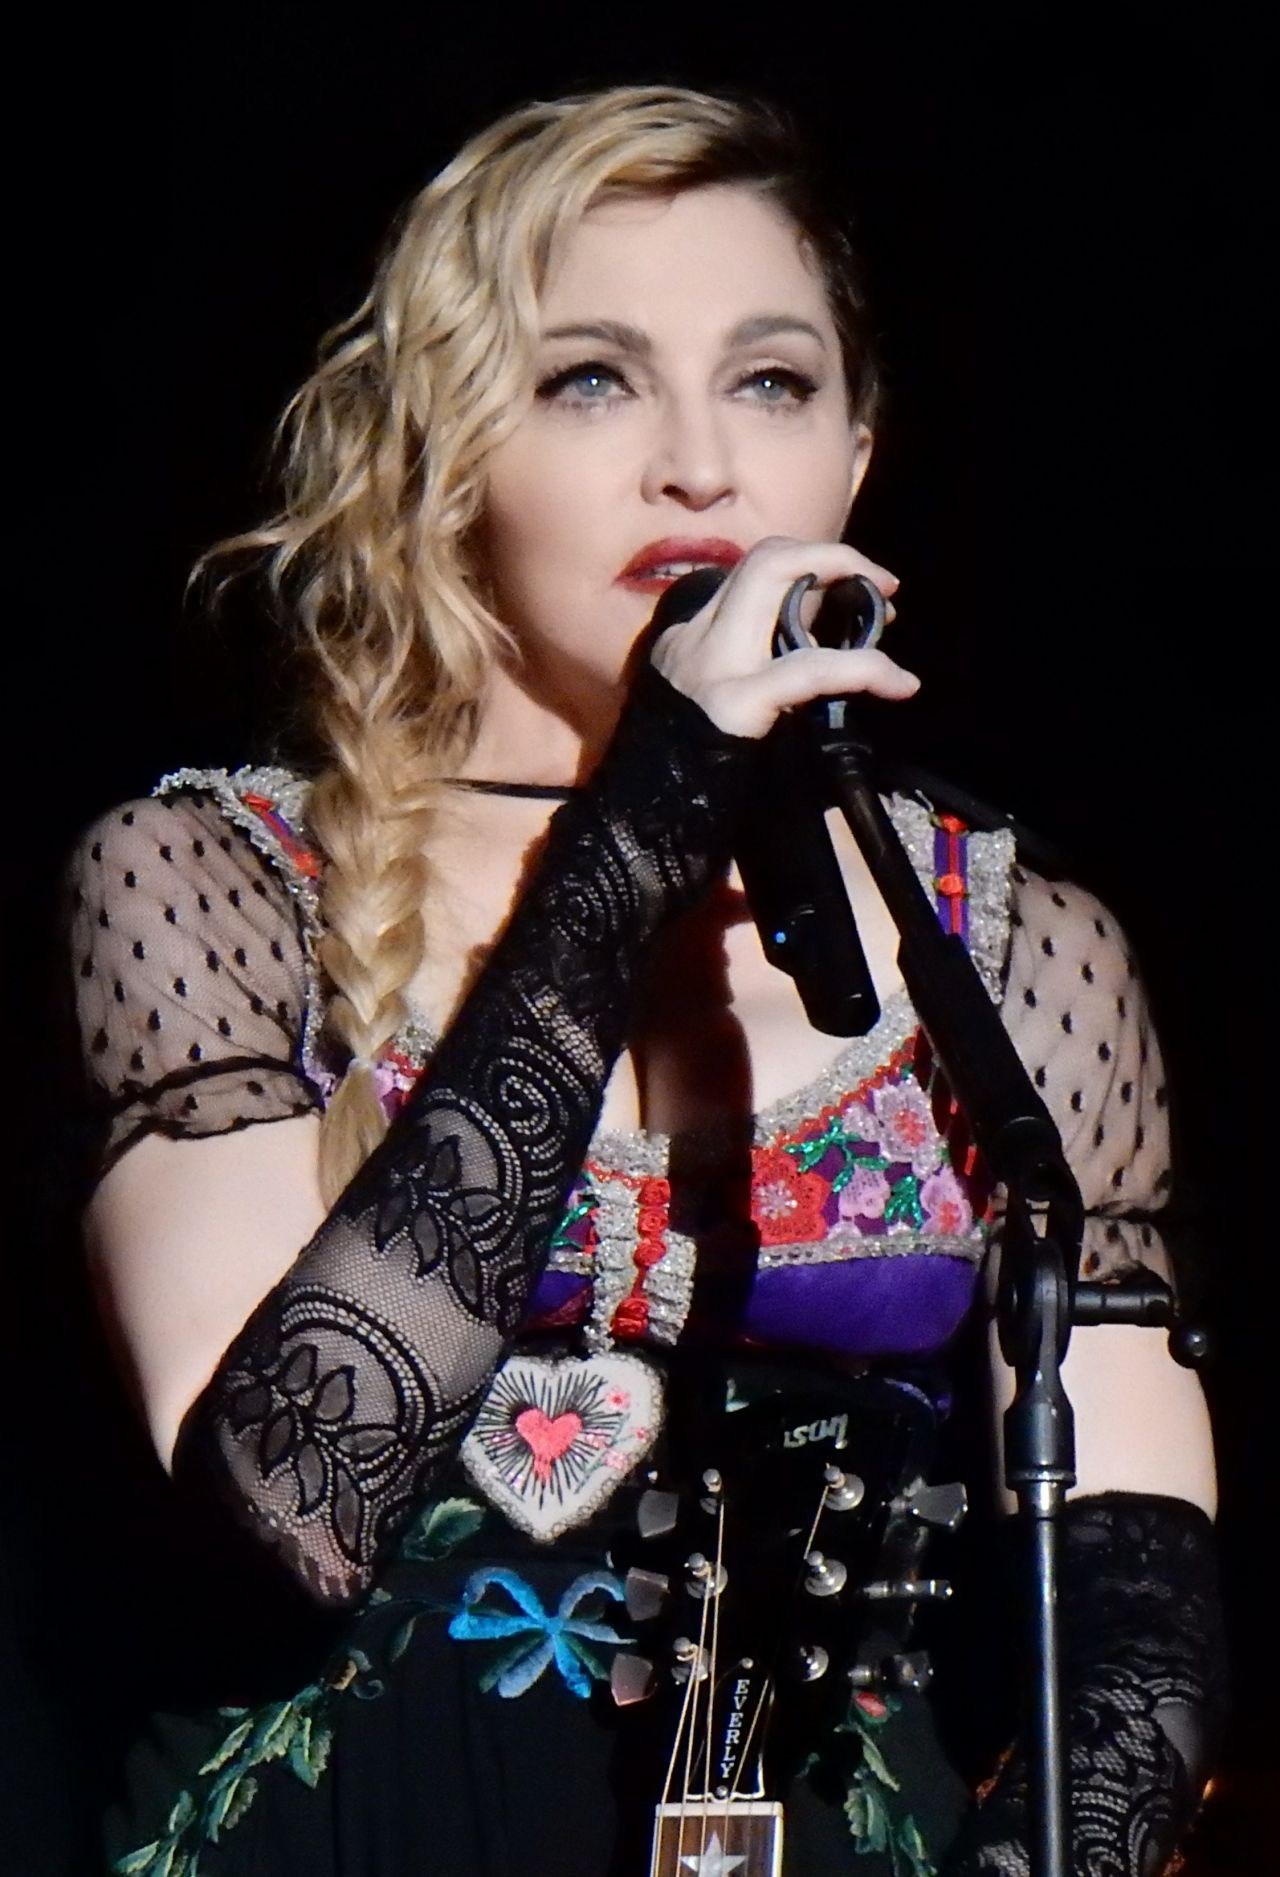 Utanç verici! Cinsel organını satışa çıkardı Mevlana detayı olay oldu: Madonna'ya tepki yağıyor